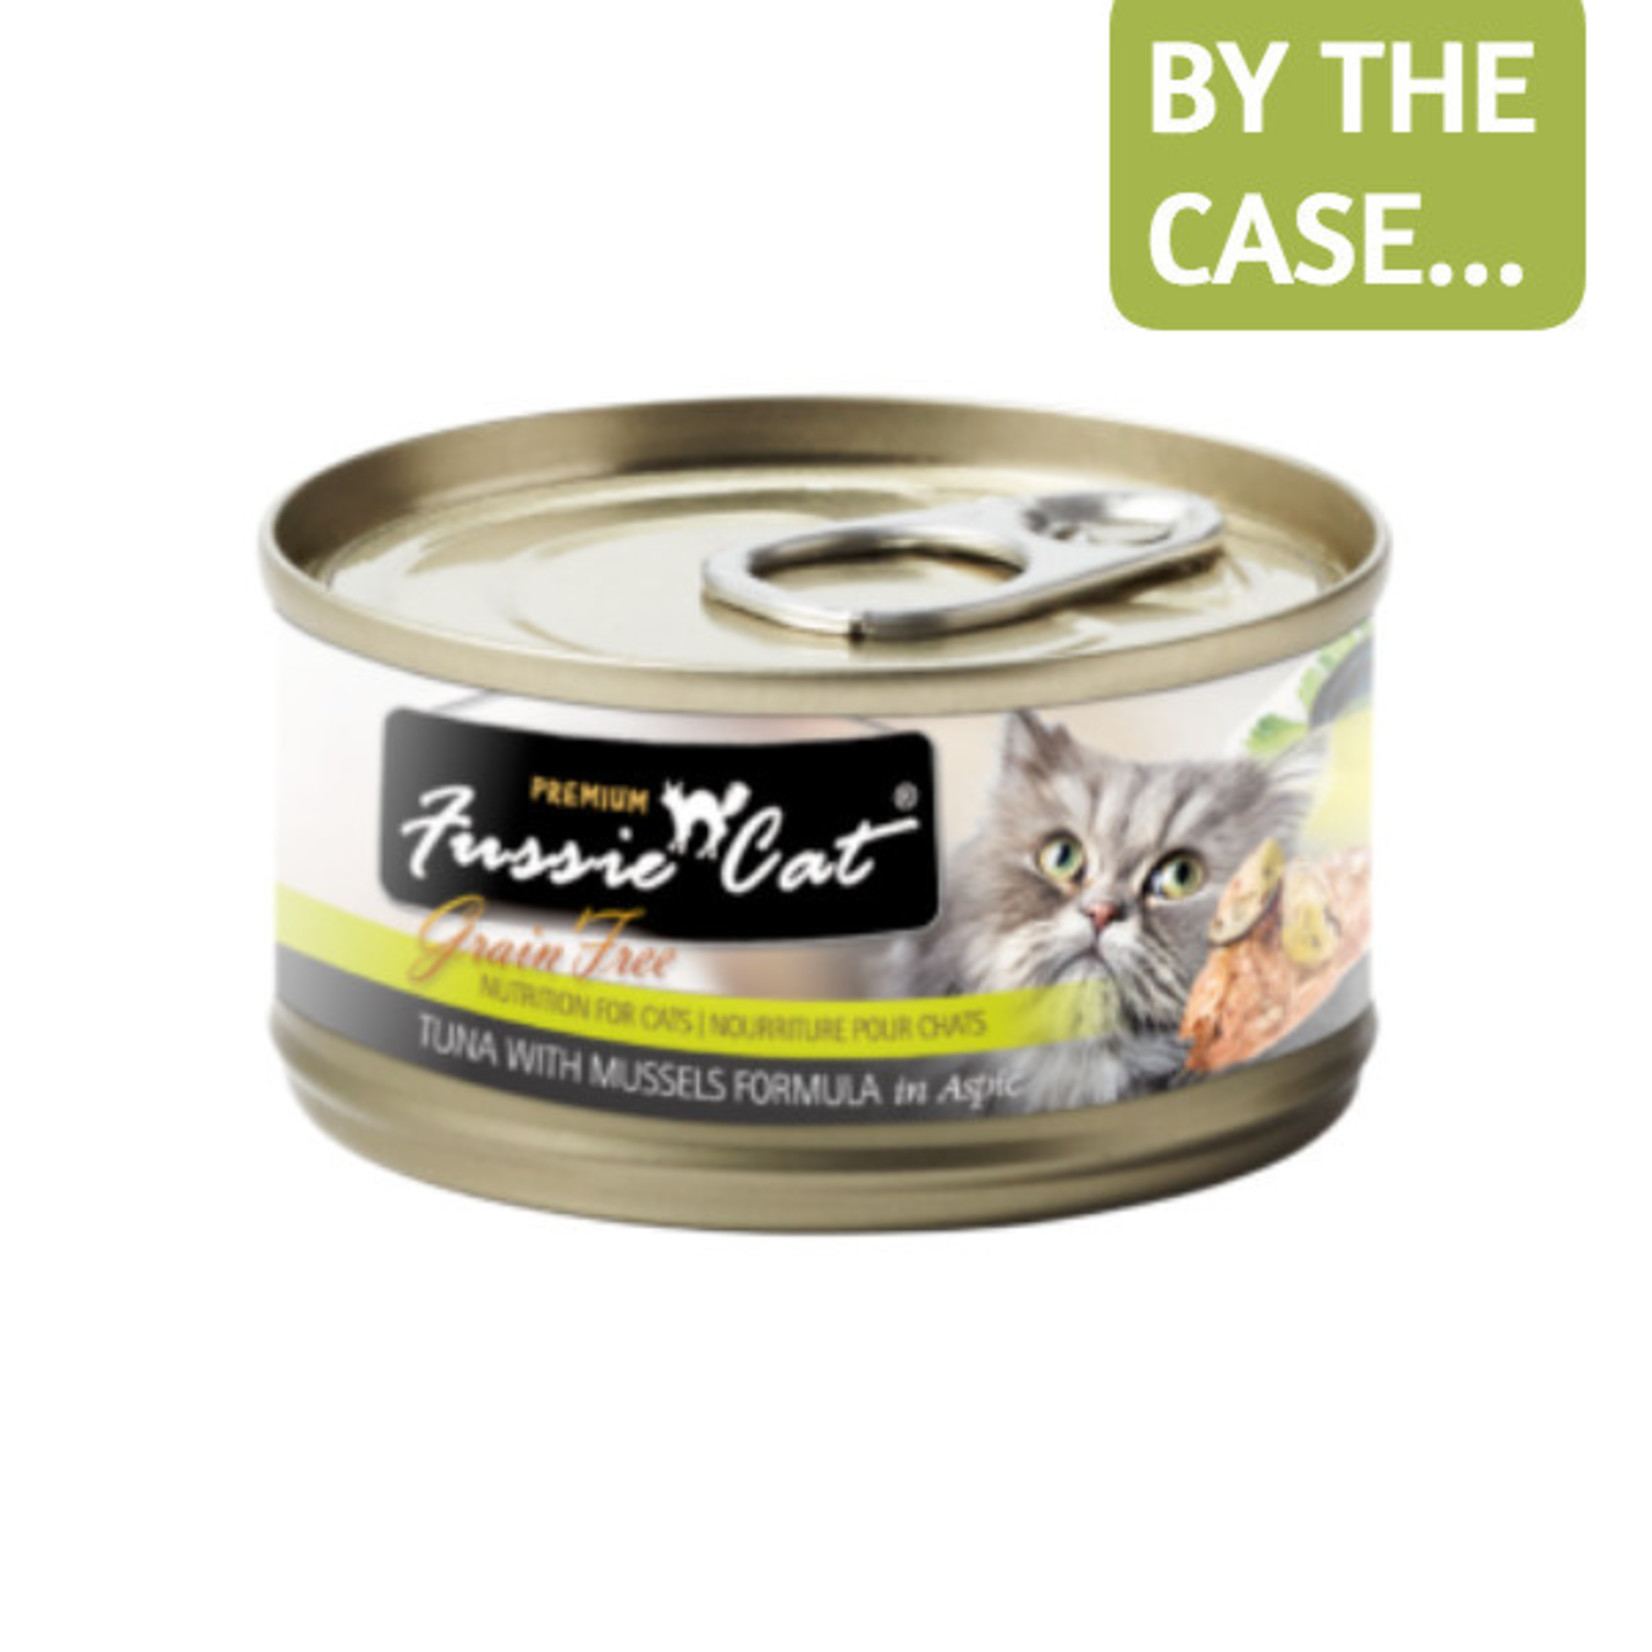 Fussie Cat Fussie Cat Wet Cat Food Tuna with Mussels Formula in Aspic 2.8oz Can Grain Free